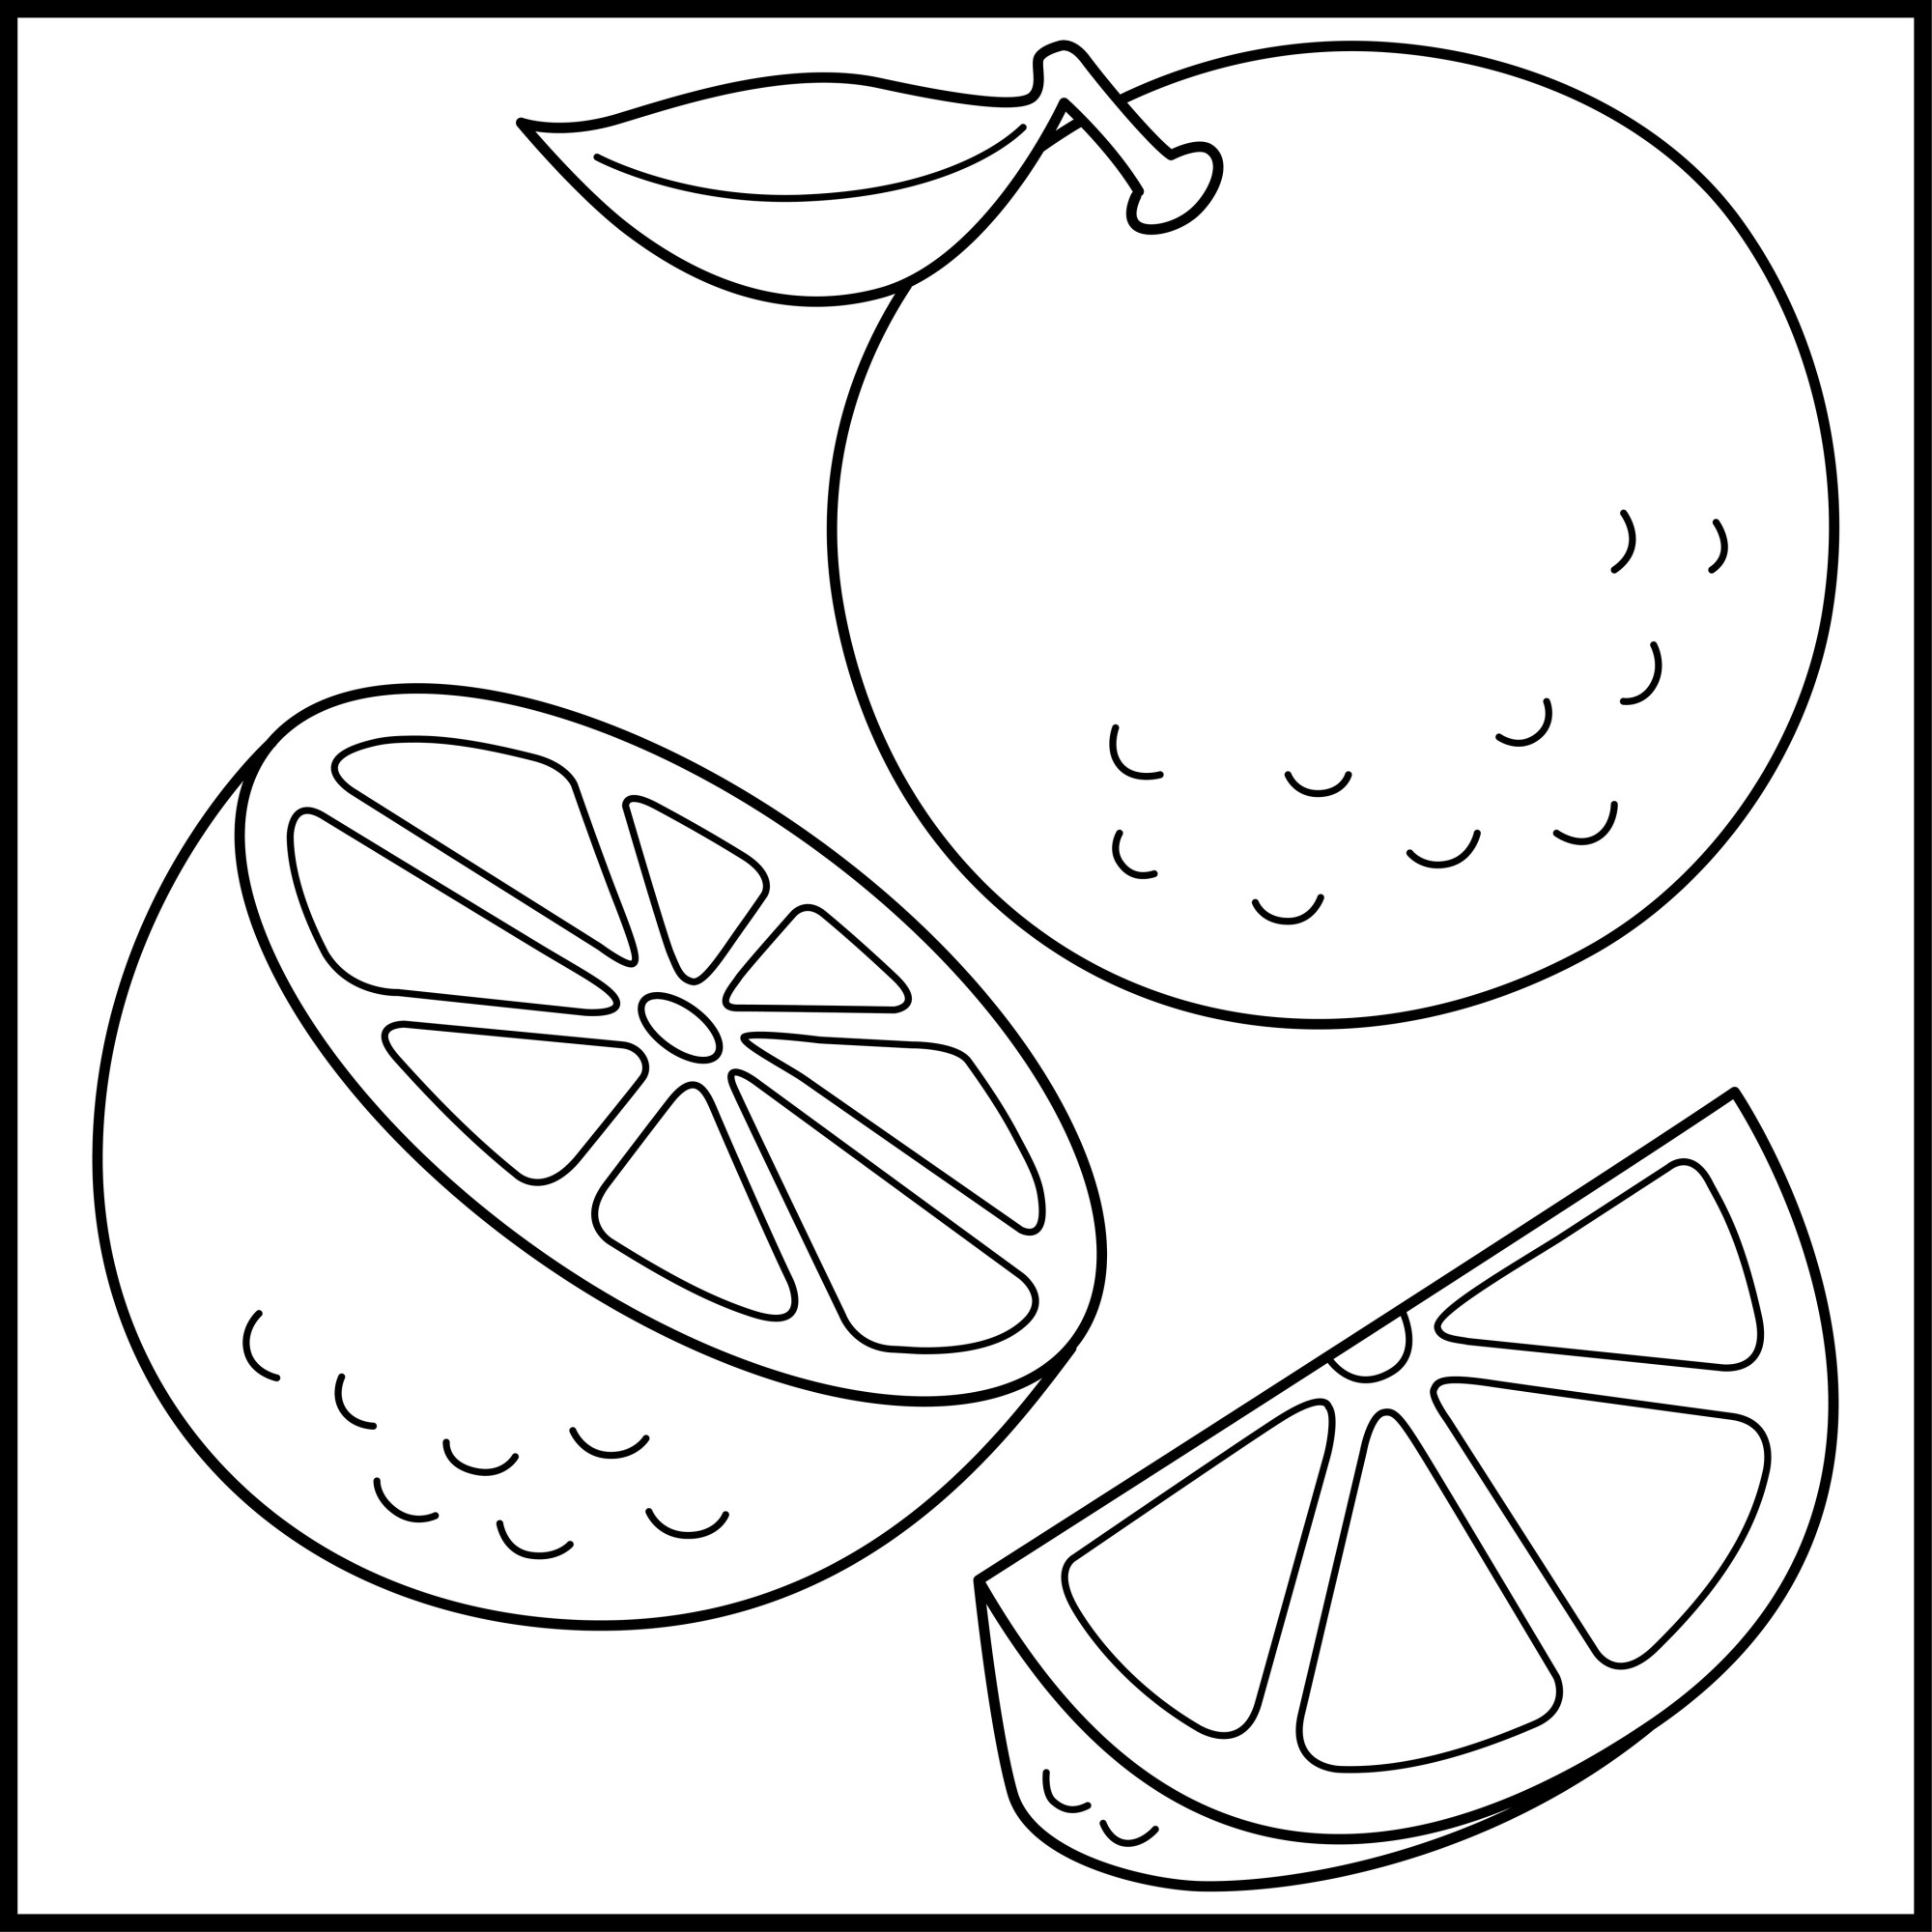 Раскраска для детей: апельсин с половинкой и долькой